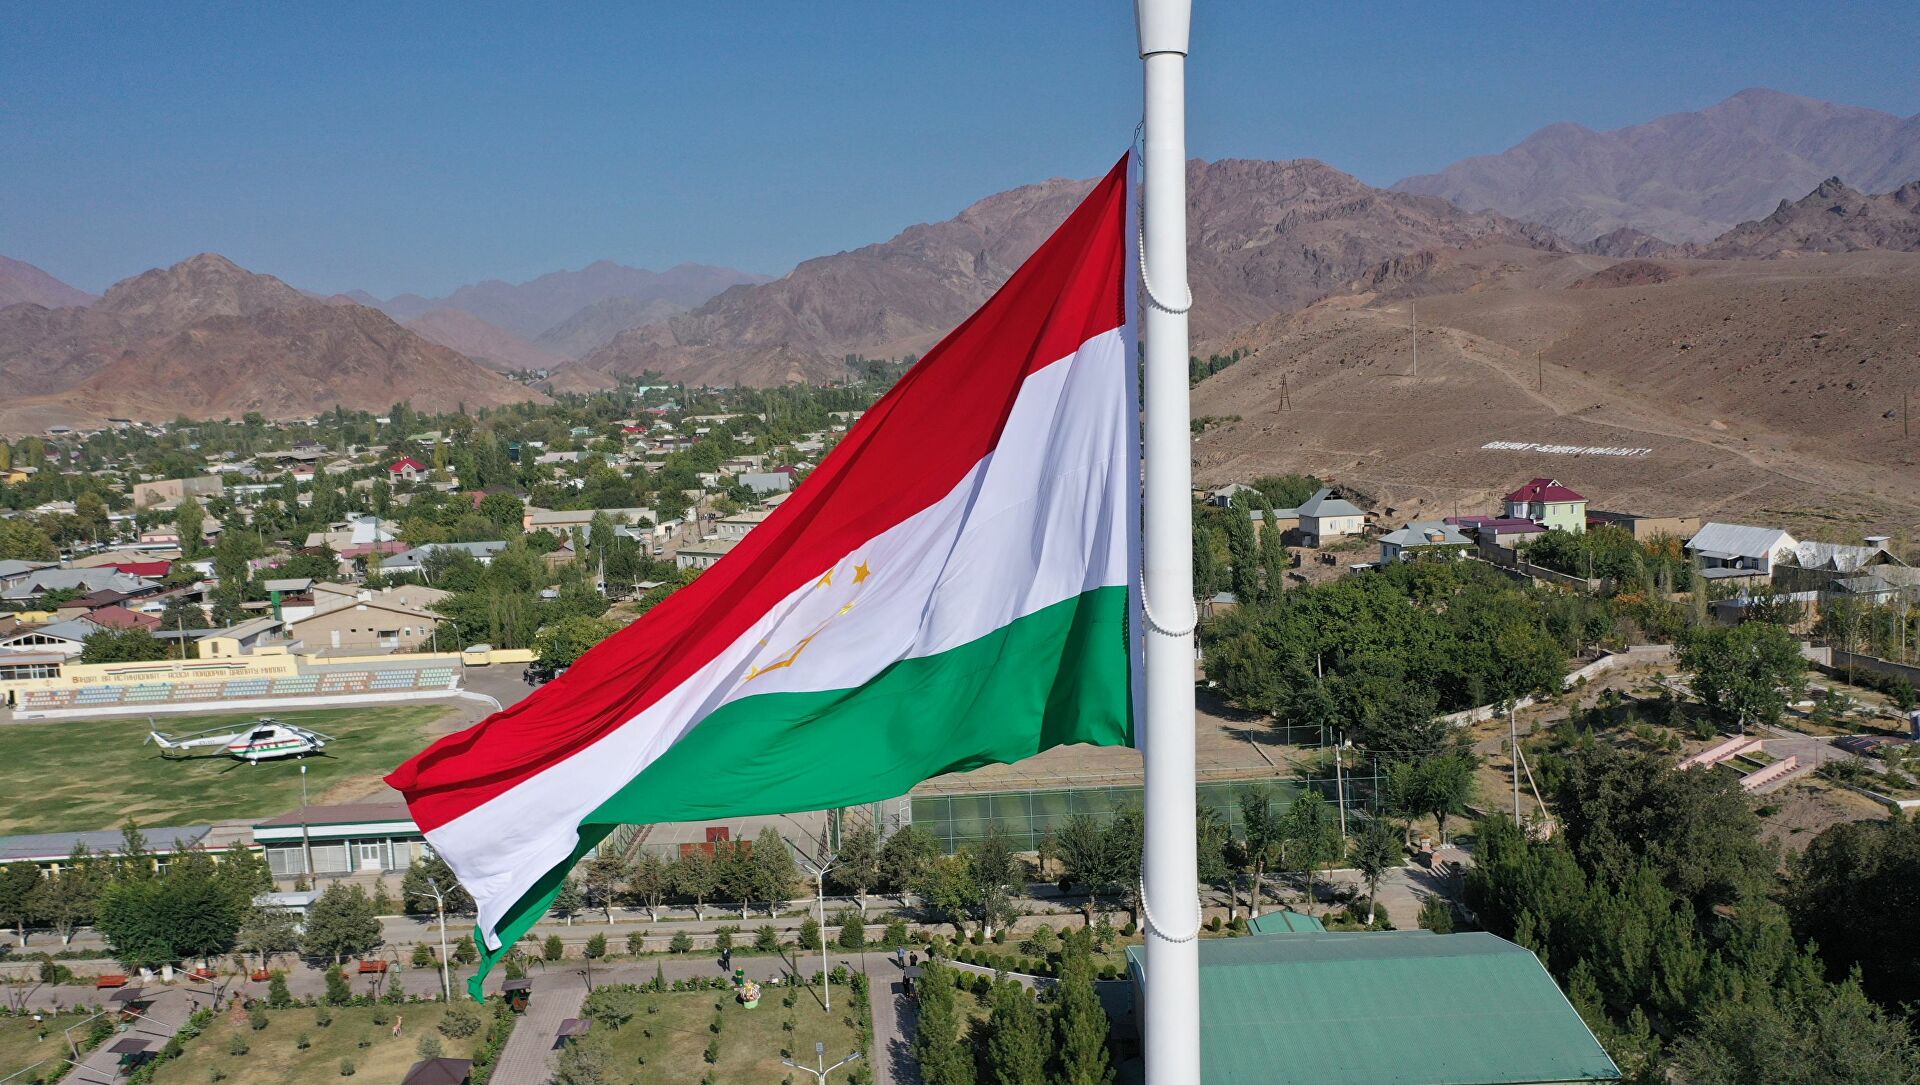 К чему приведут беспорядки в Таджикистане? Разбираемся